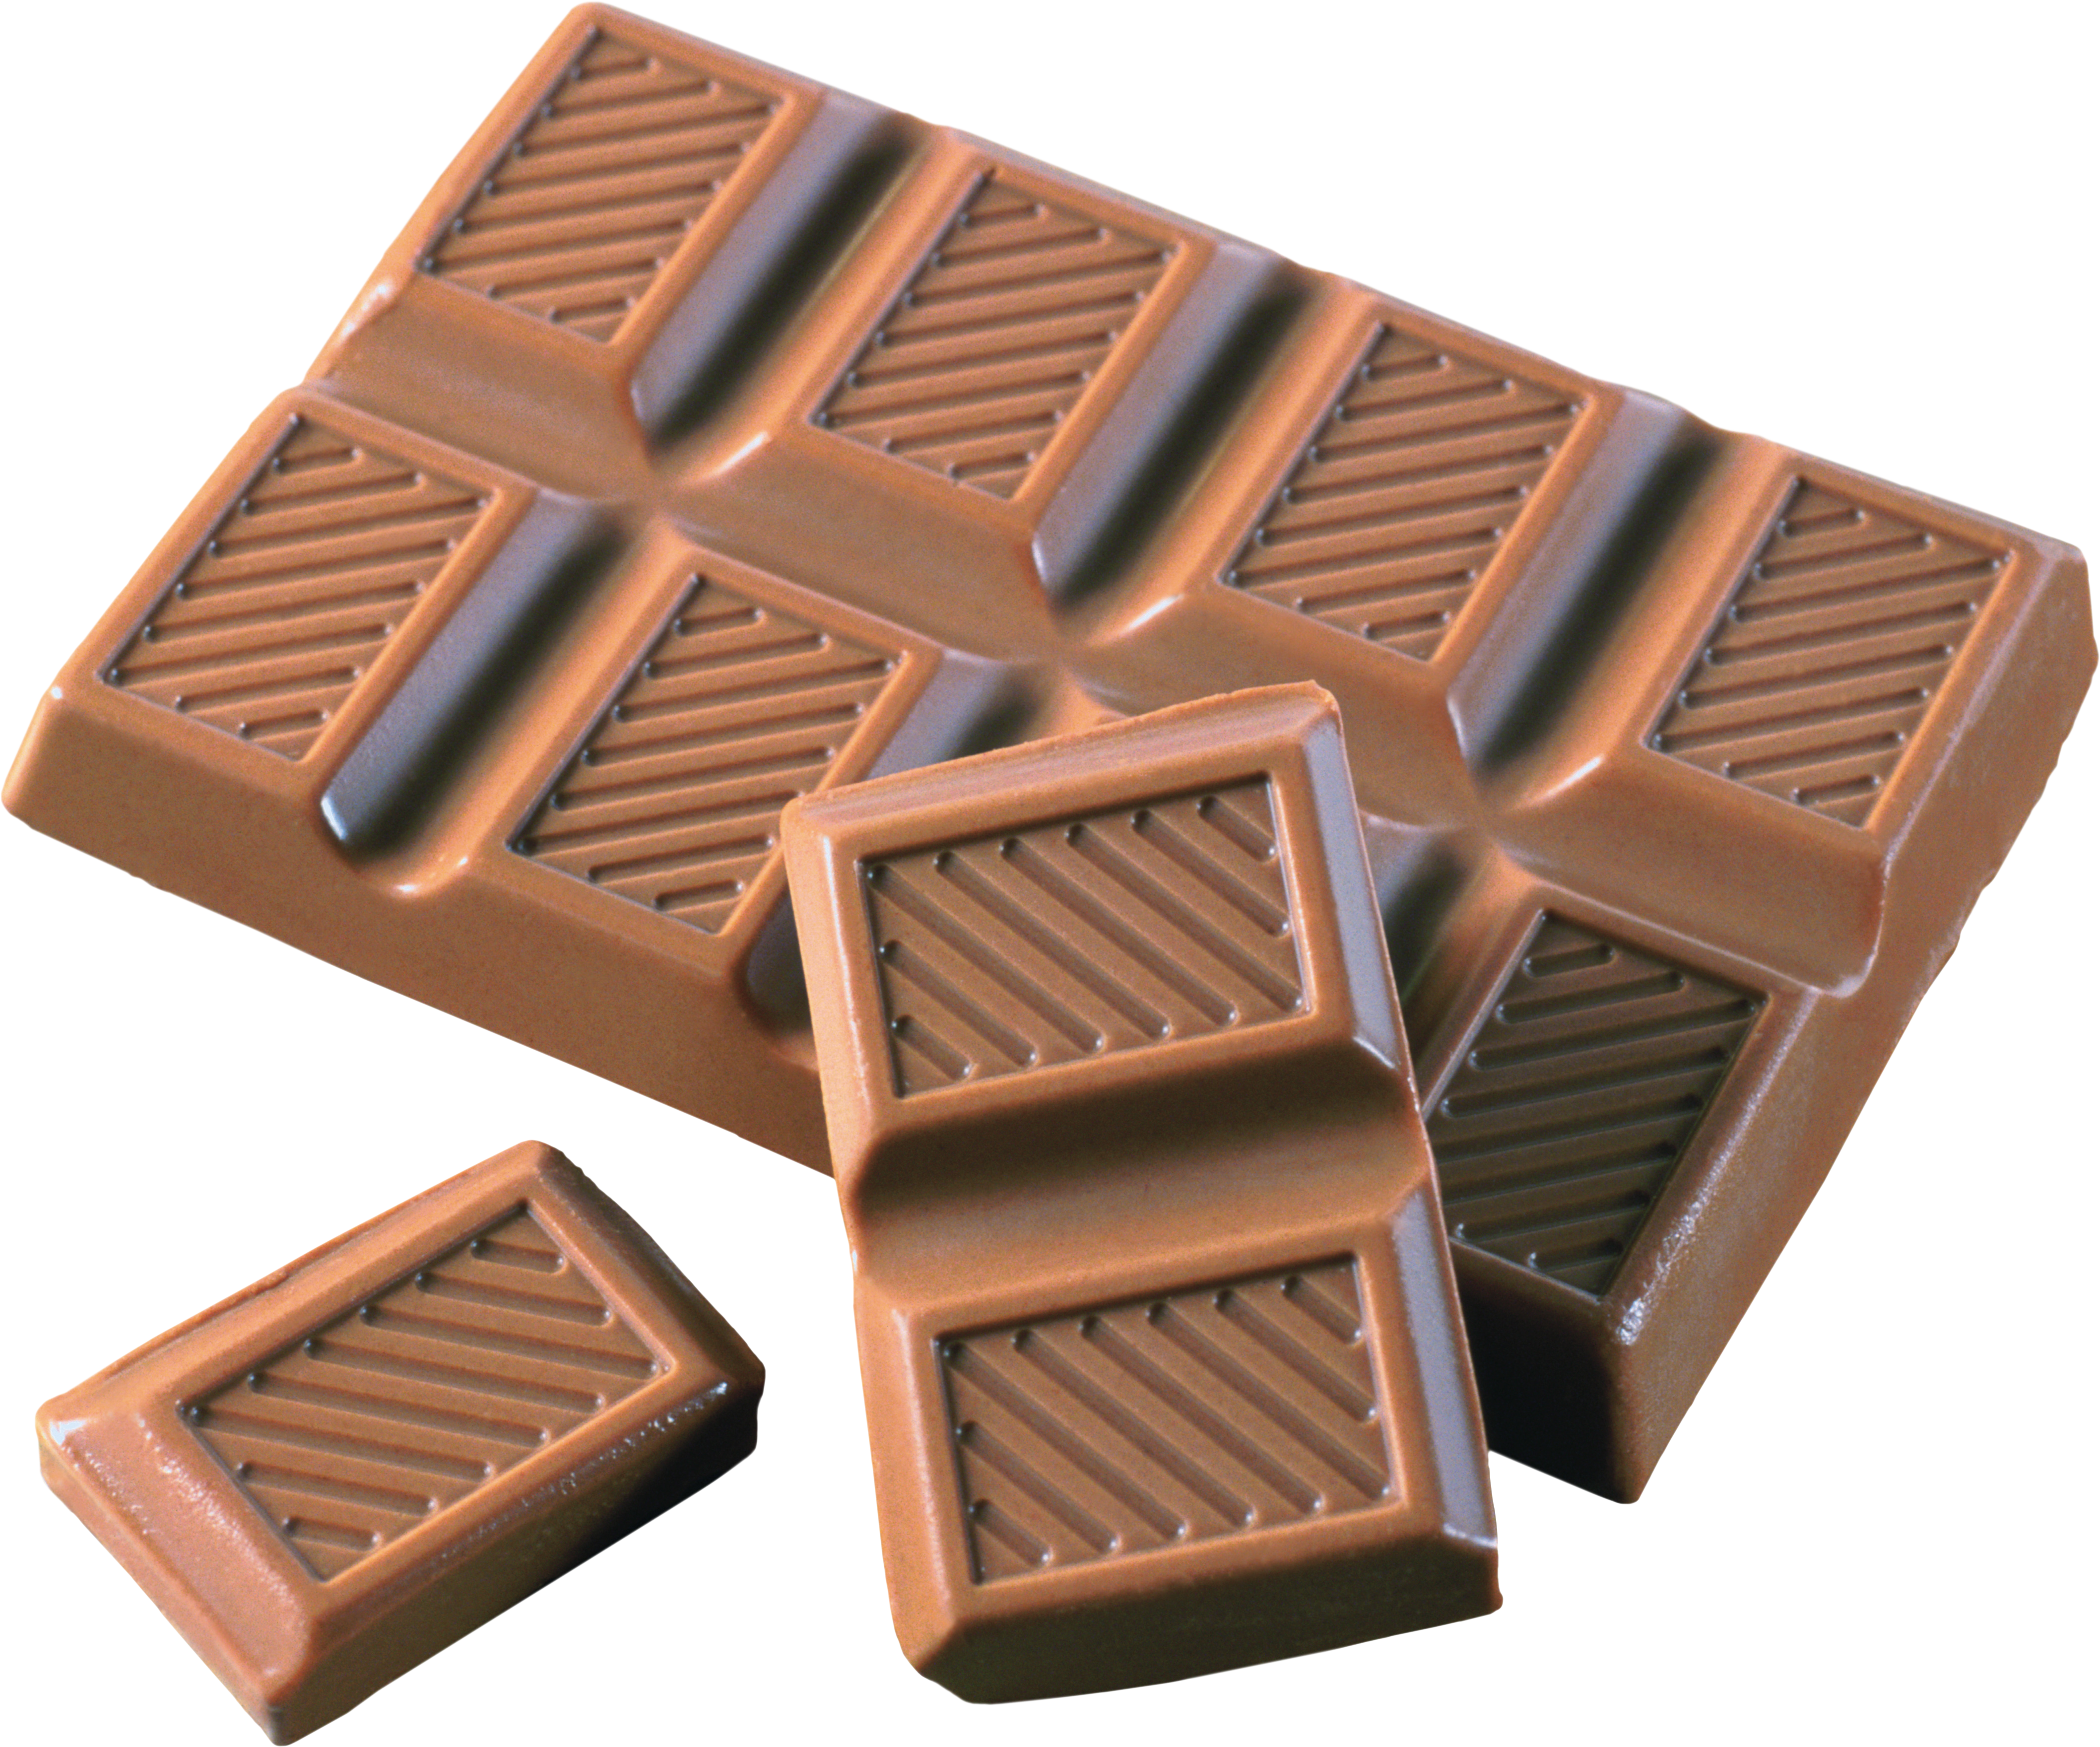 Шоколад PNG